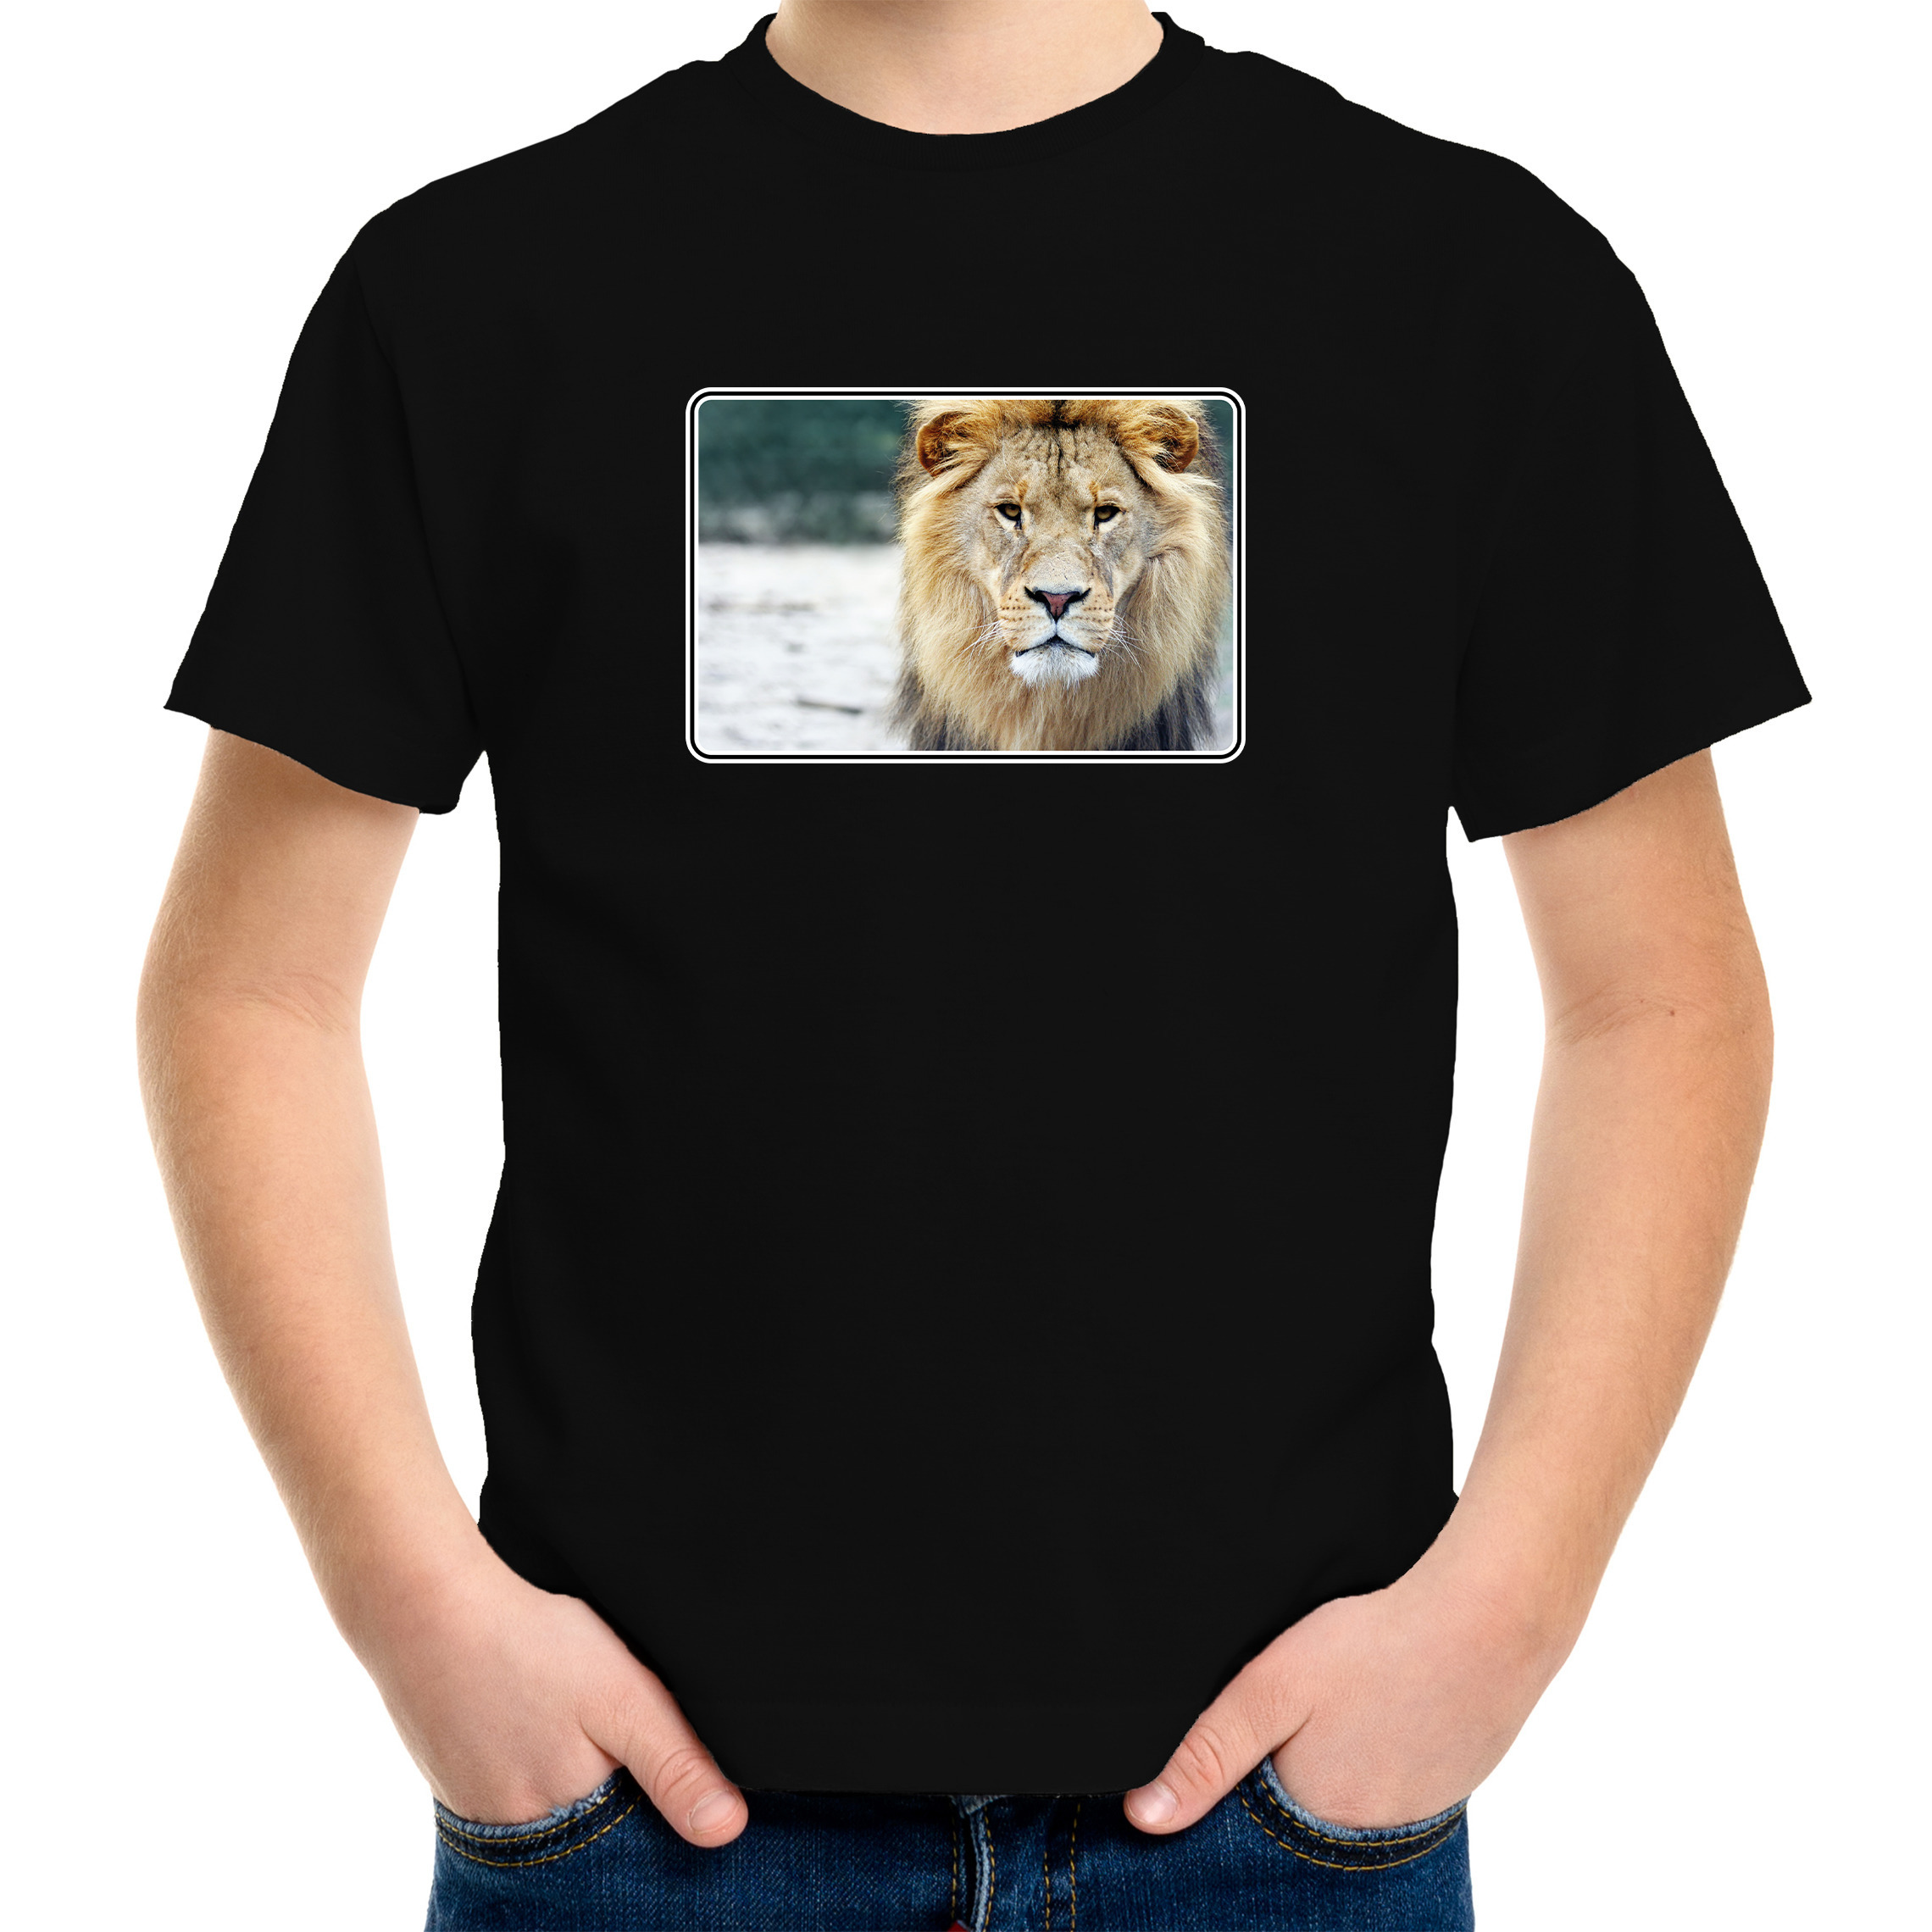 Dieren t-shirt met leeuwen foto zwart voor kinderen